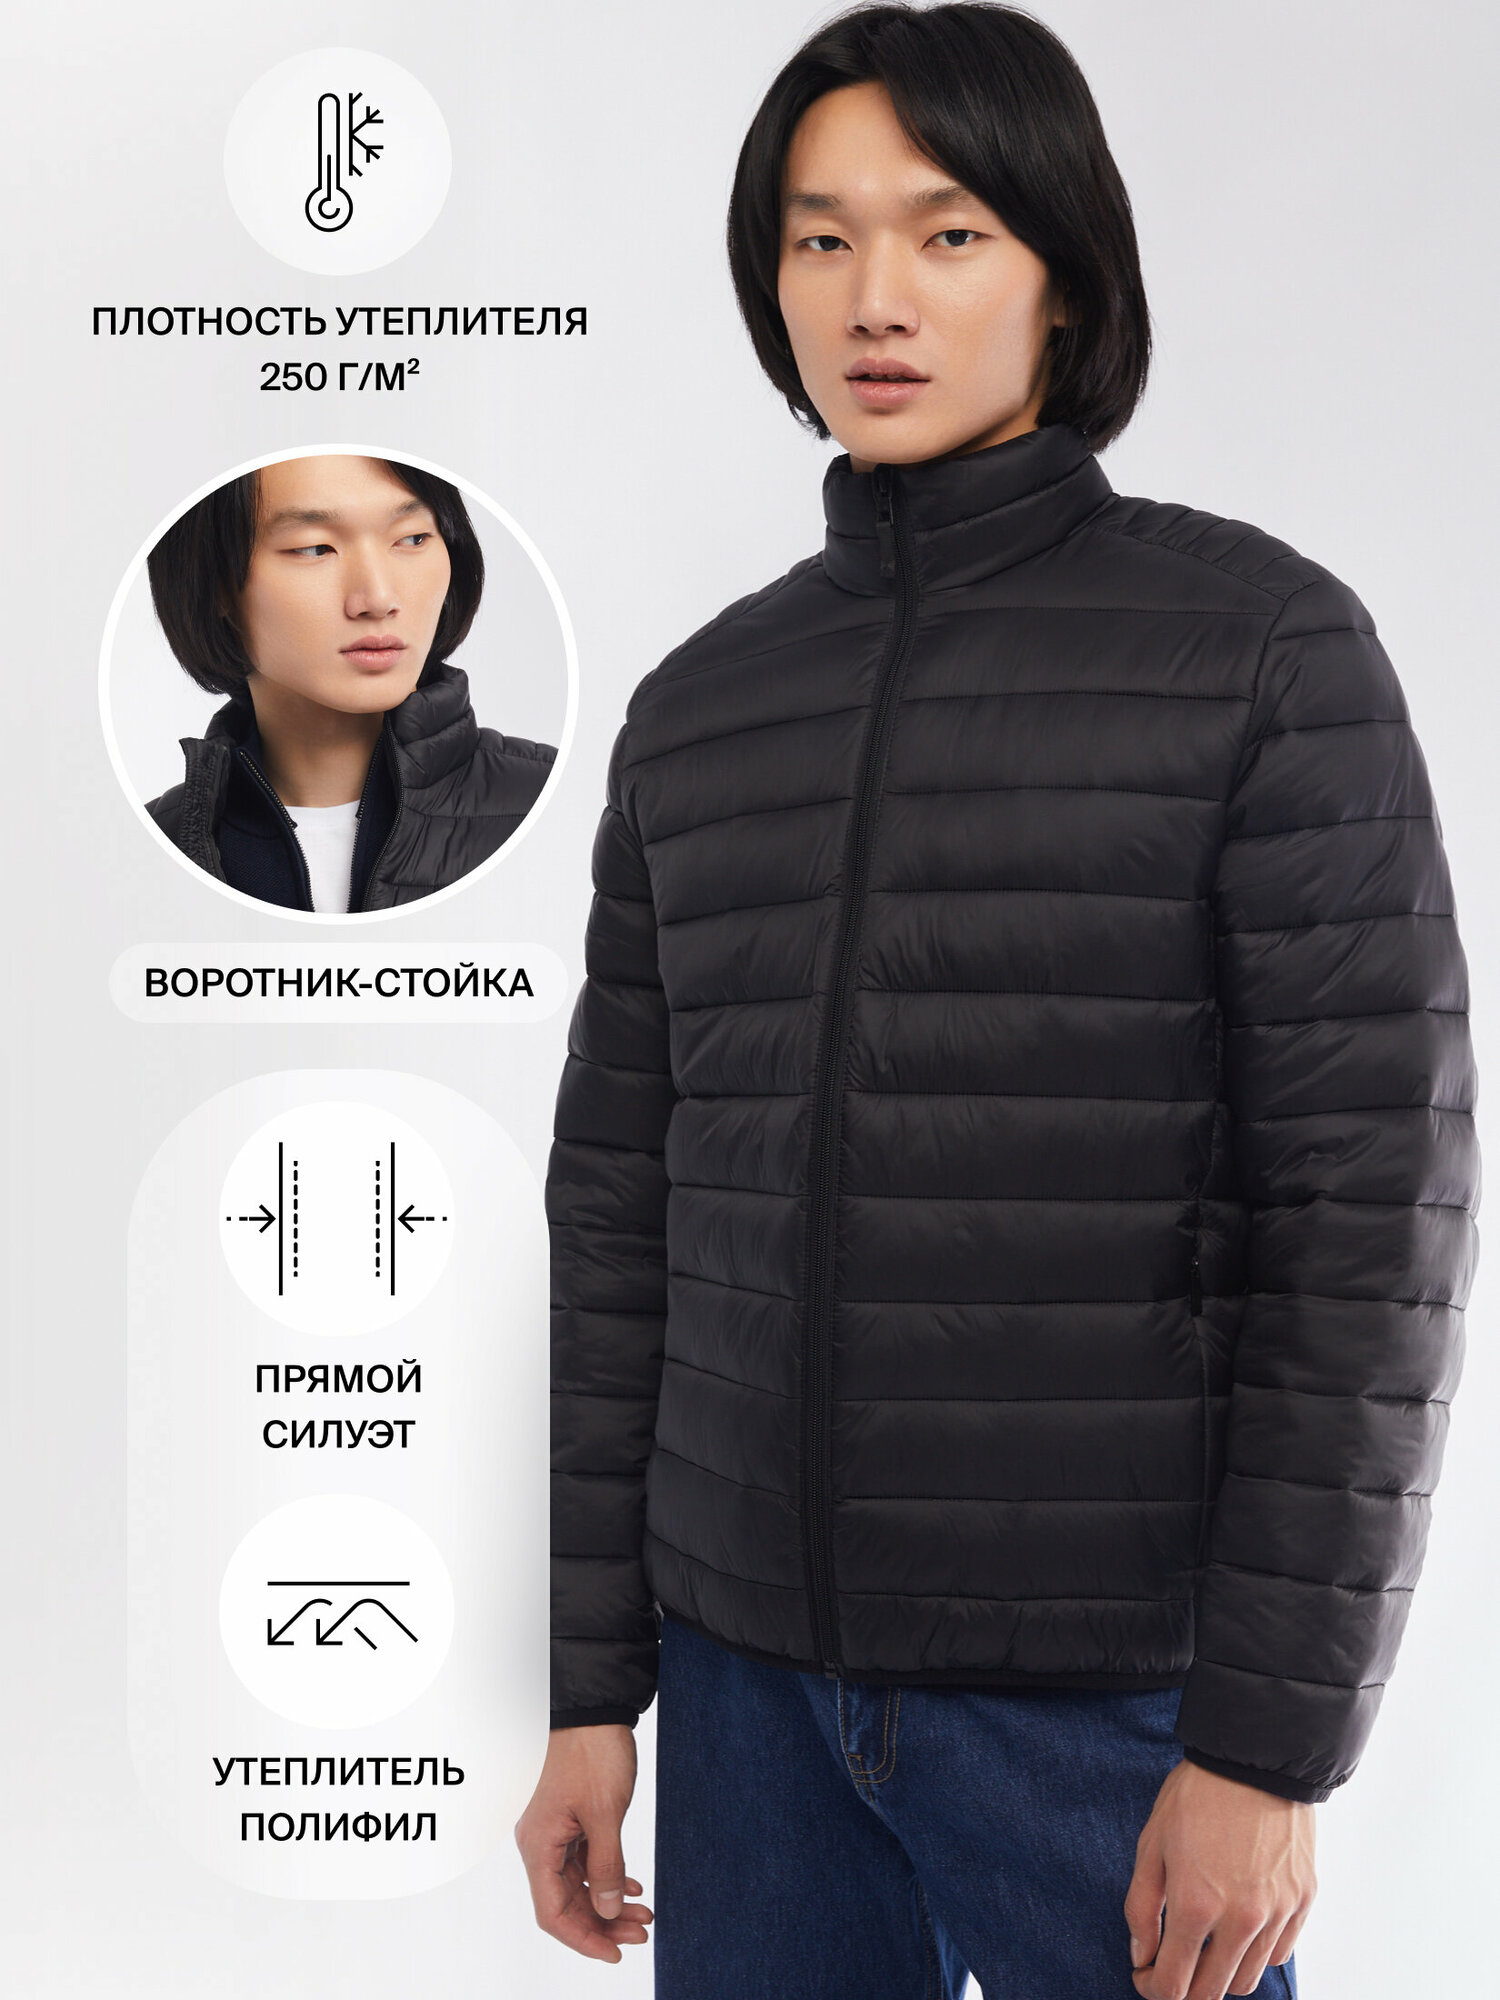 Лёгкая утеплённая куртка на молнии с воротником-стойкой цвет Черный размер XL